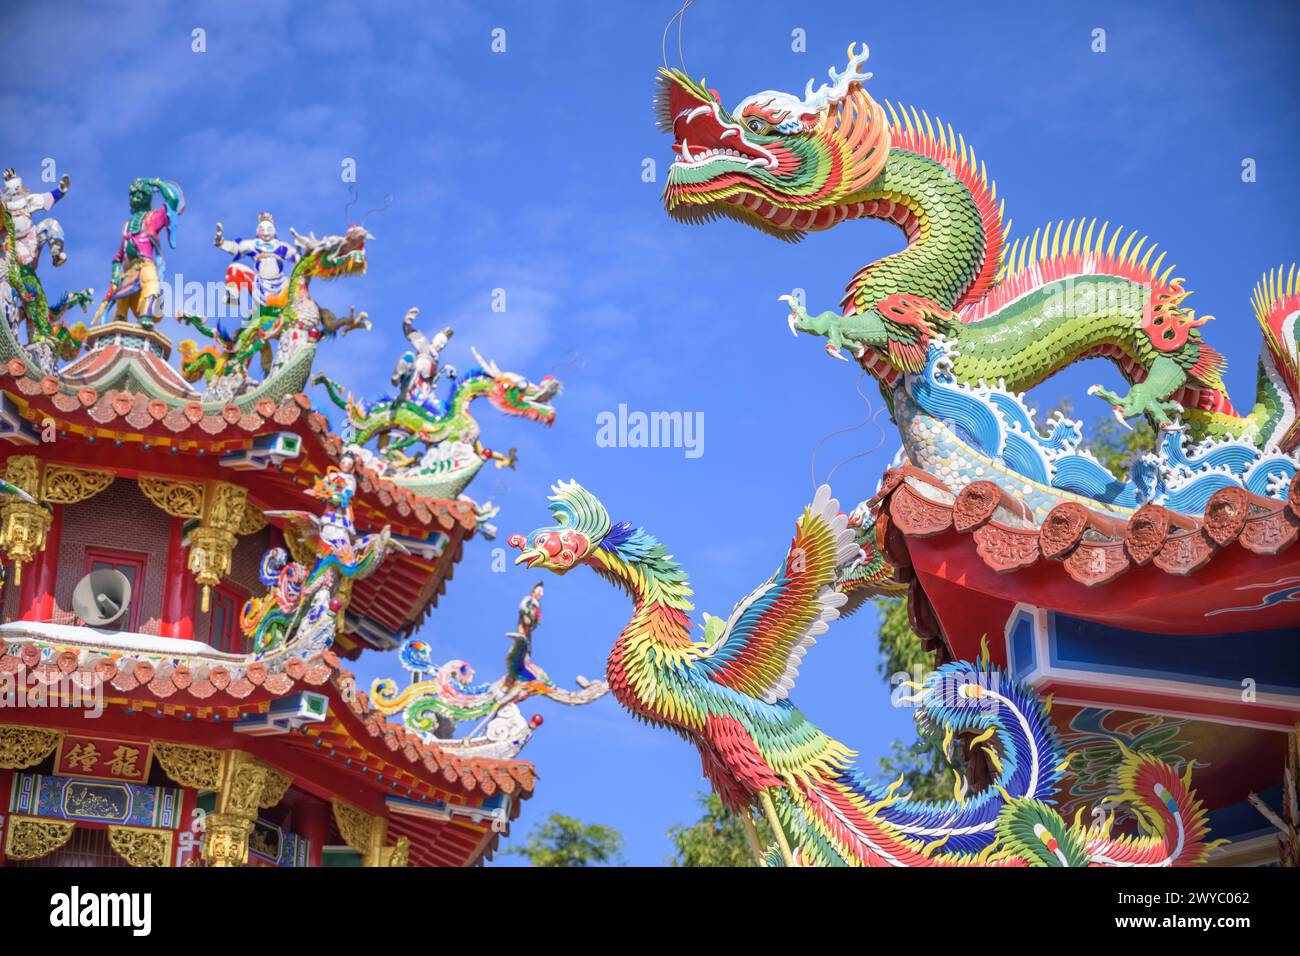 Colorate e intricate sculture di drago adornano il tetto di un tempio tradizionale taiwanese contro un cielo limpido Foto Stock